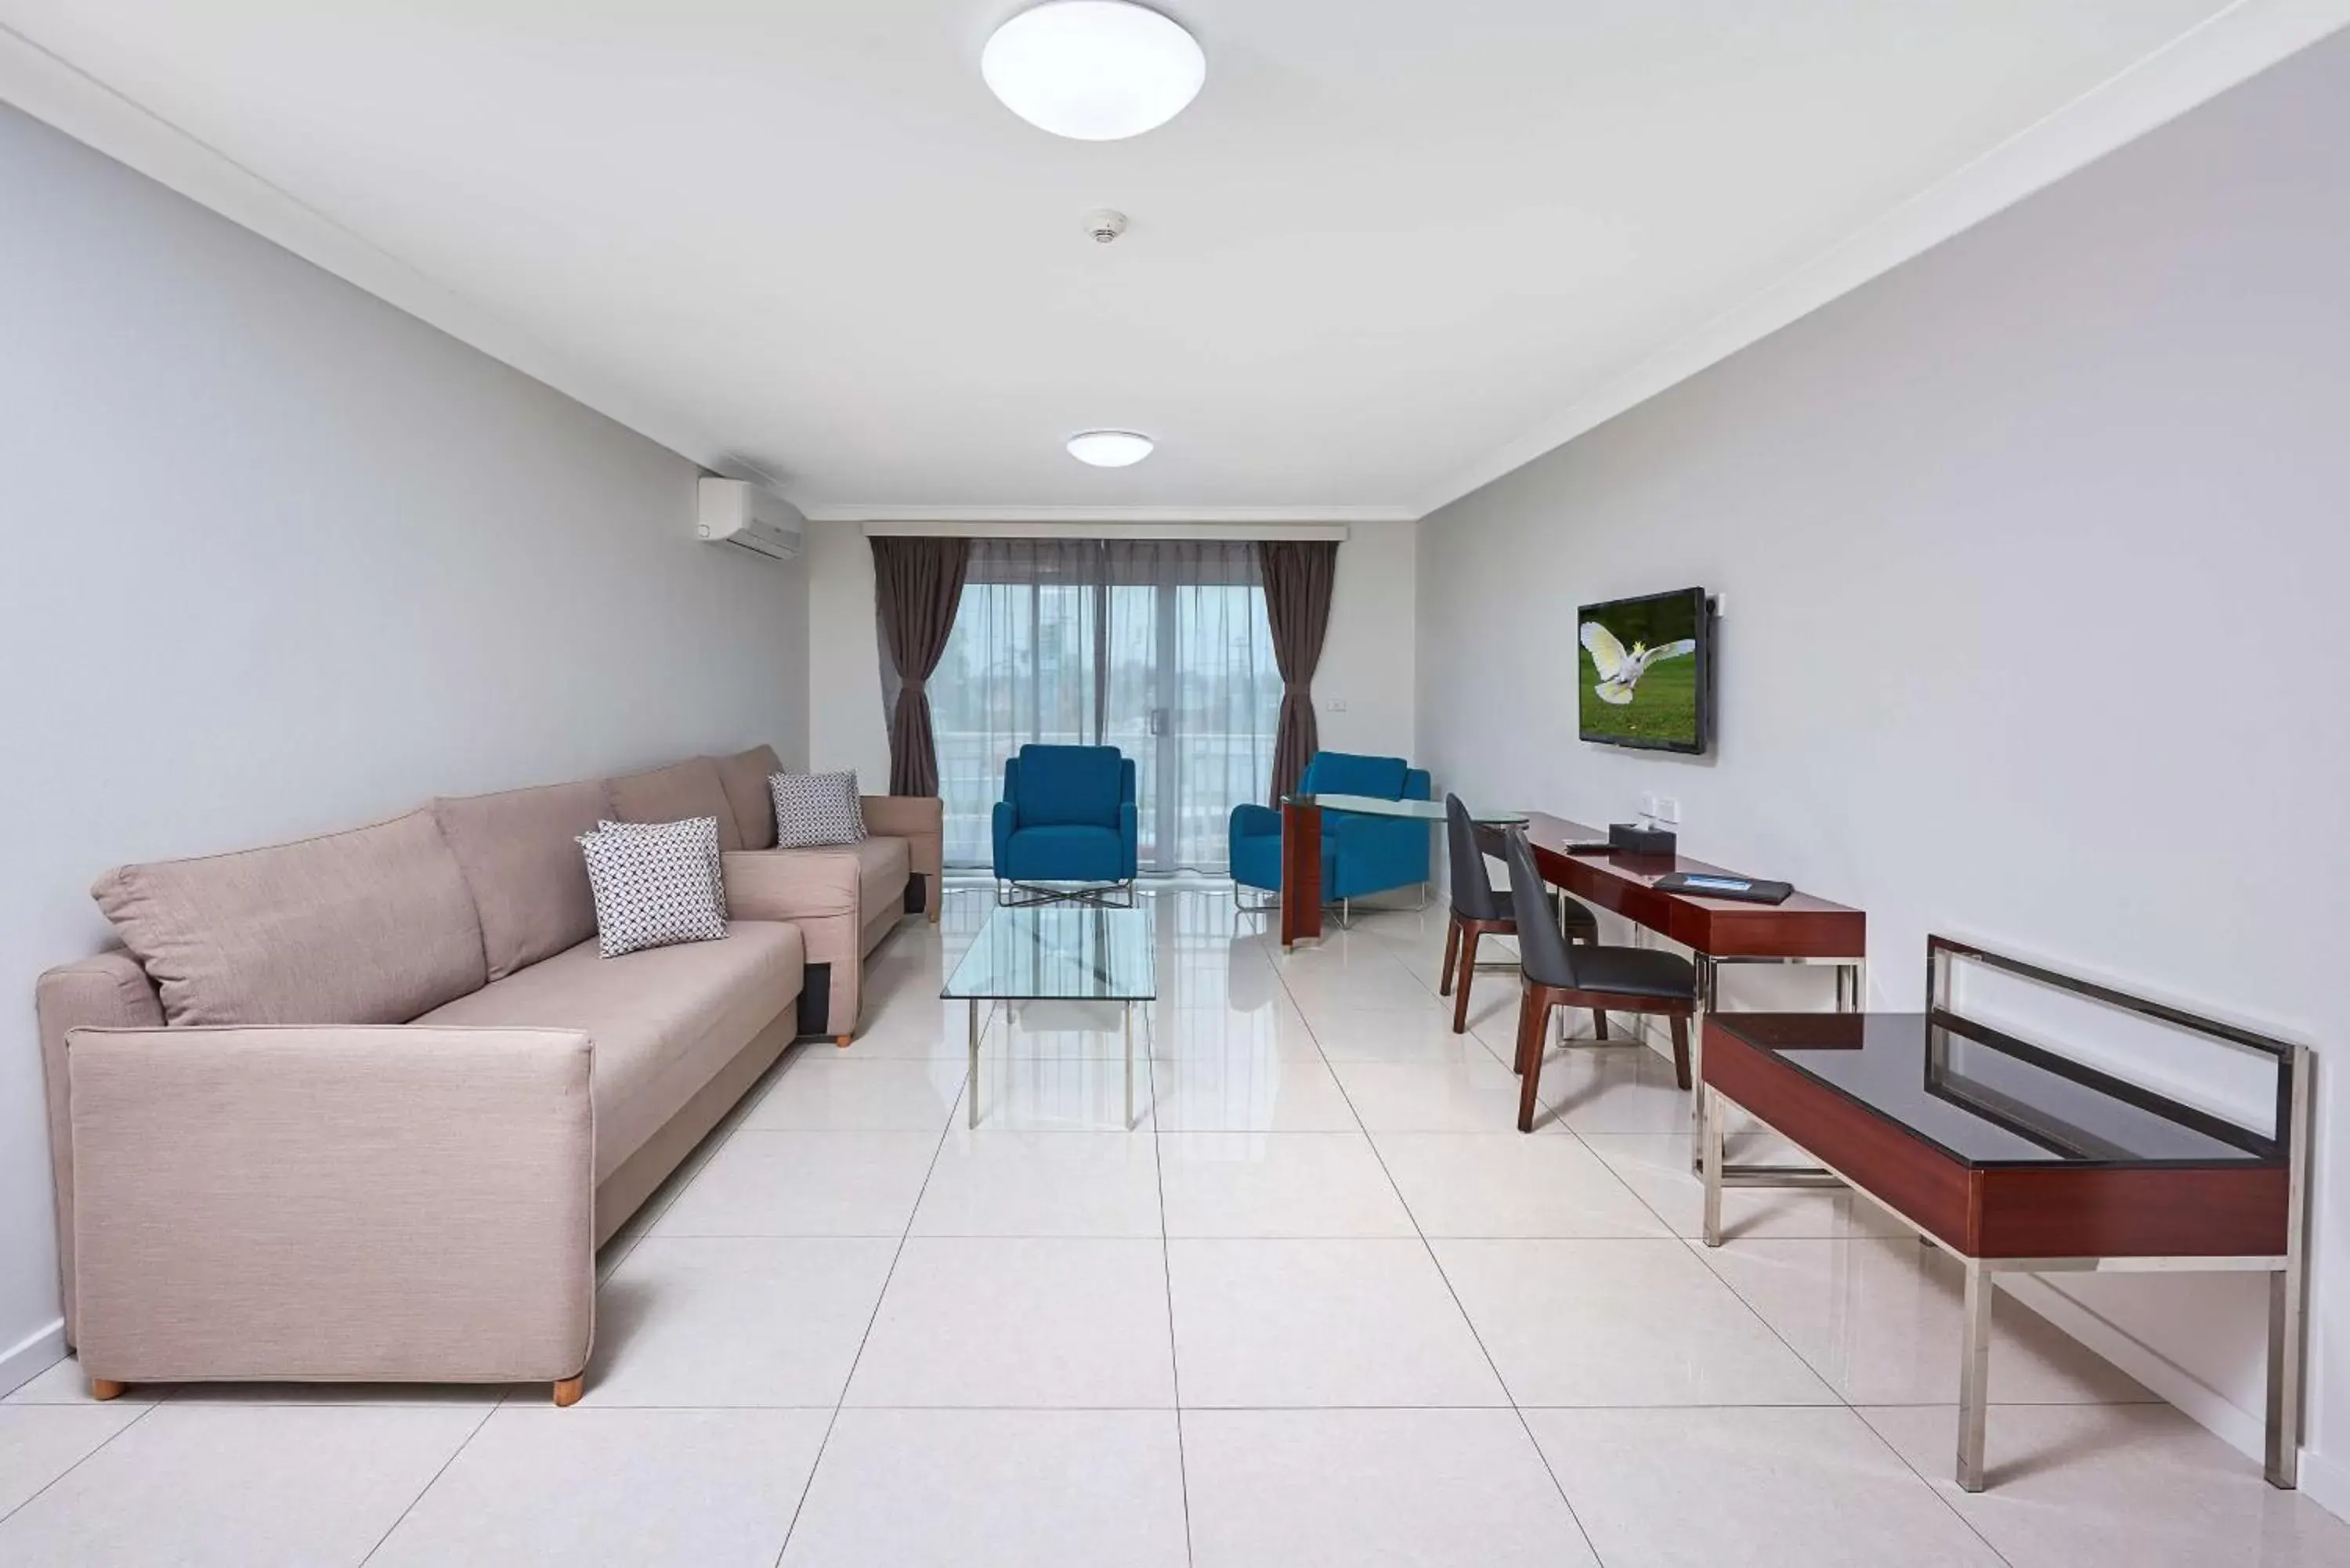 Living room, Seating Area in Best Western Casula Motor Inn